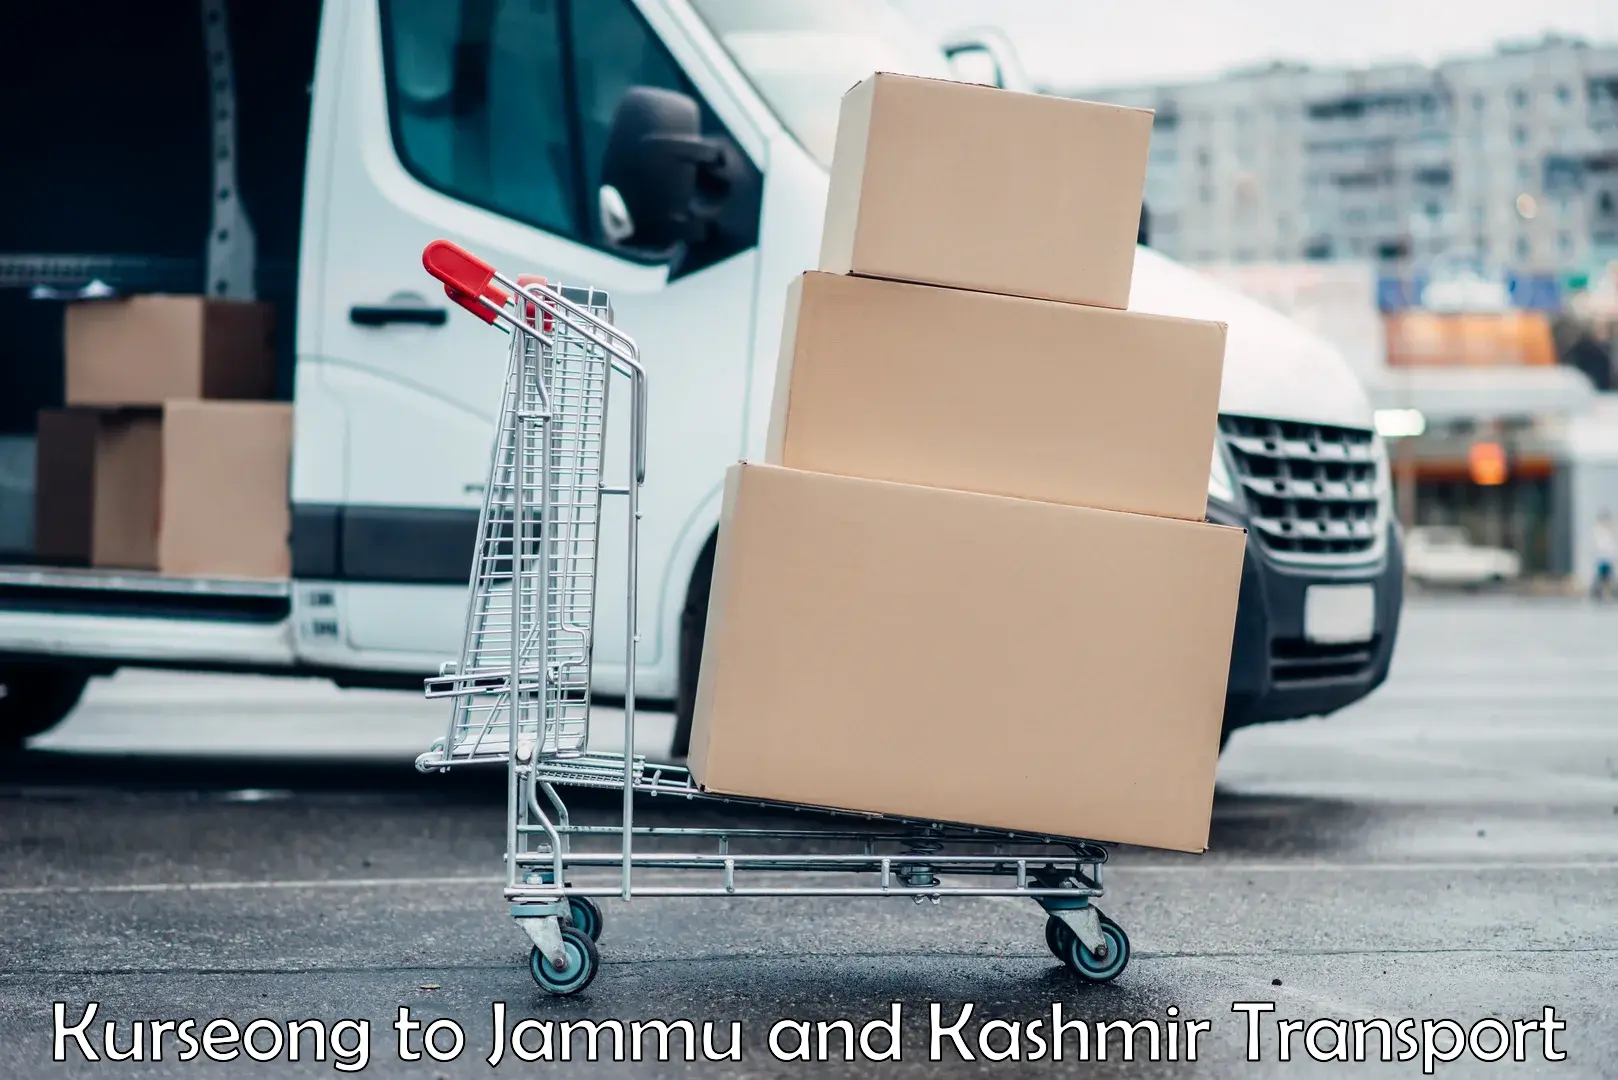 Container transport service Kurseong to IIT Jammu